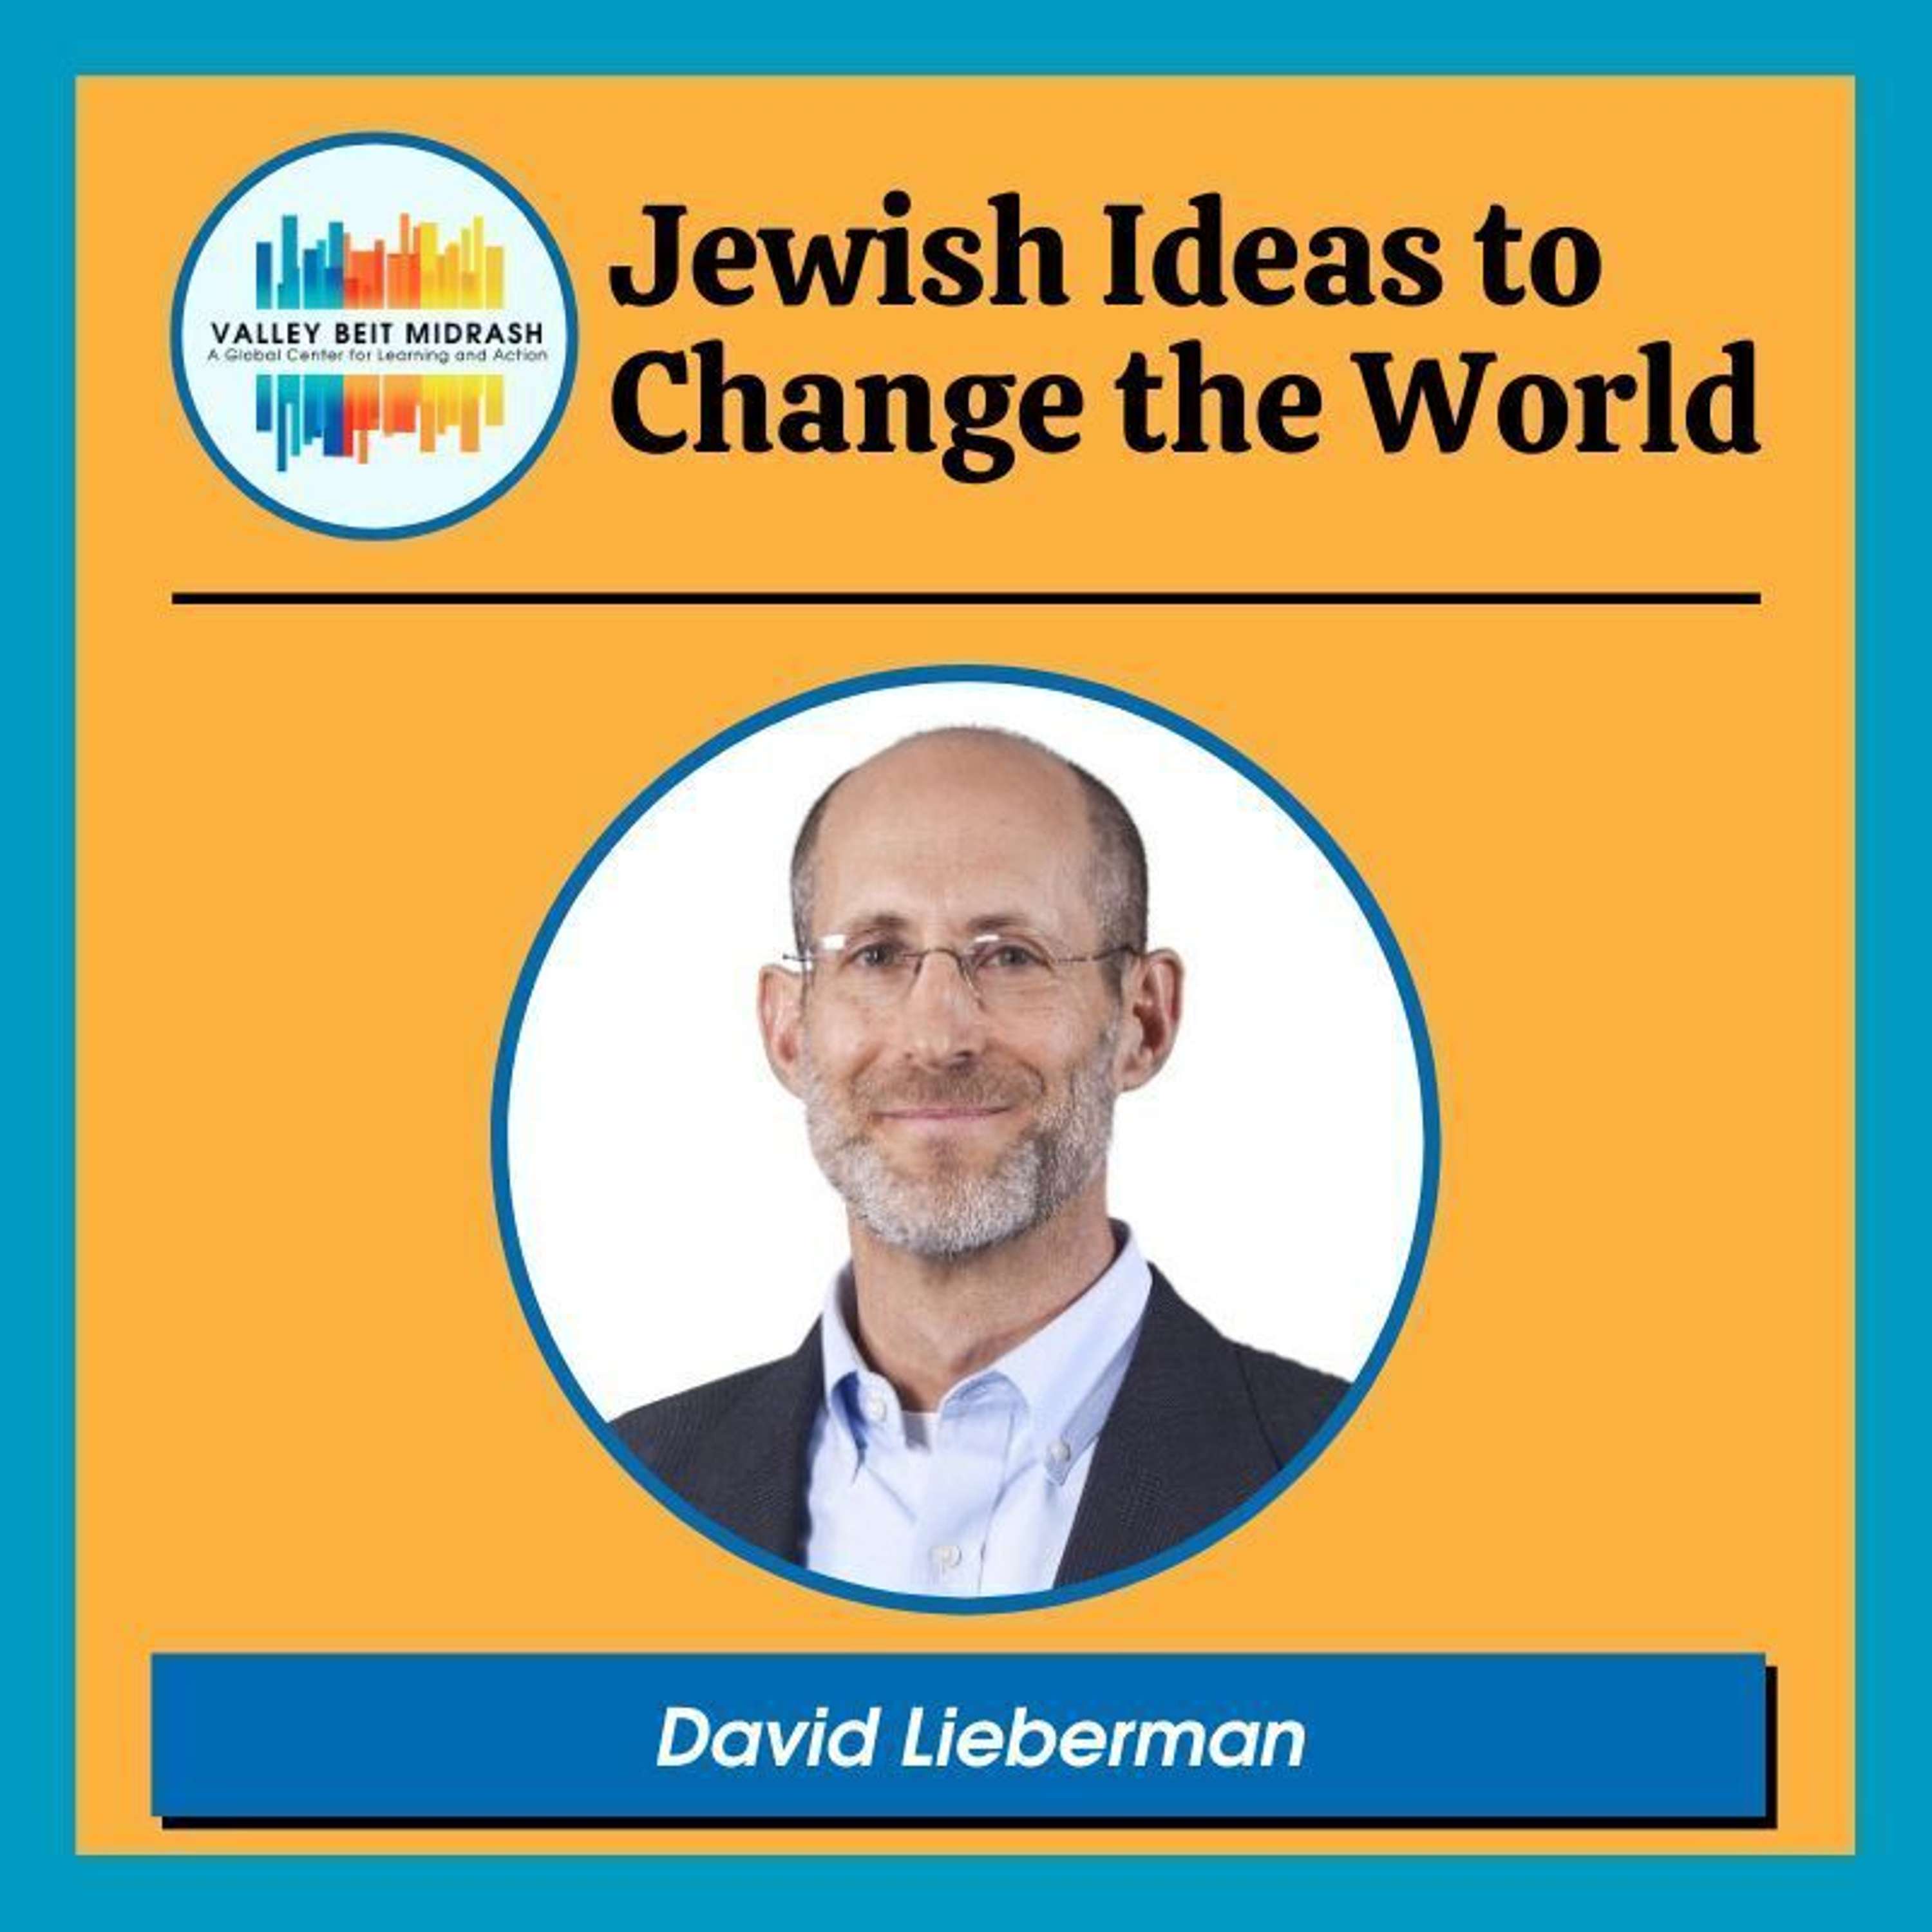 Transcendental Judaism–Hearing the “still small voice”